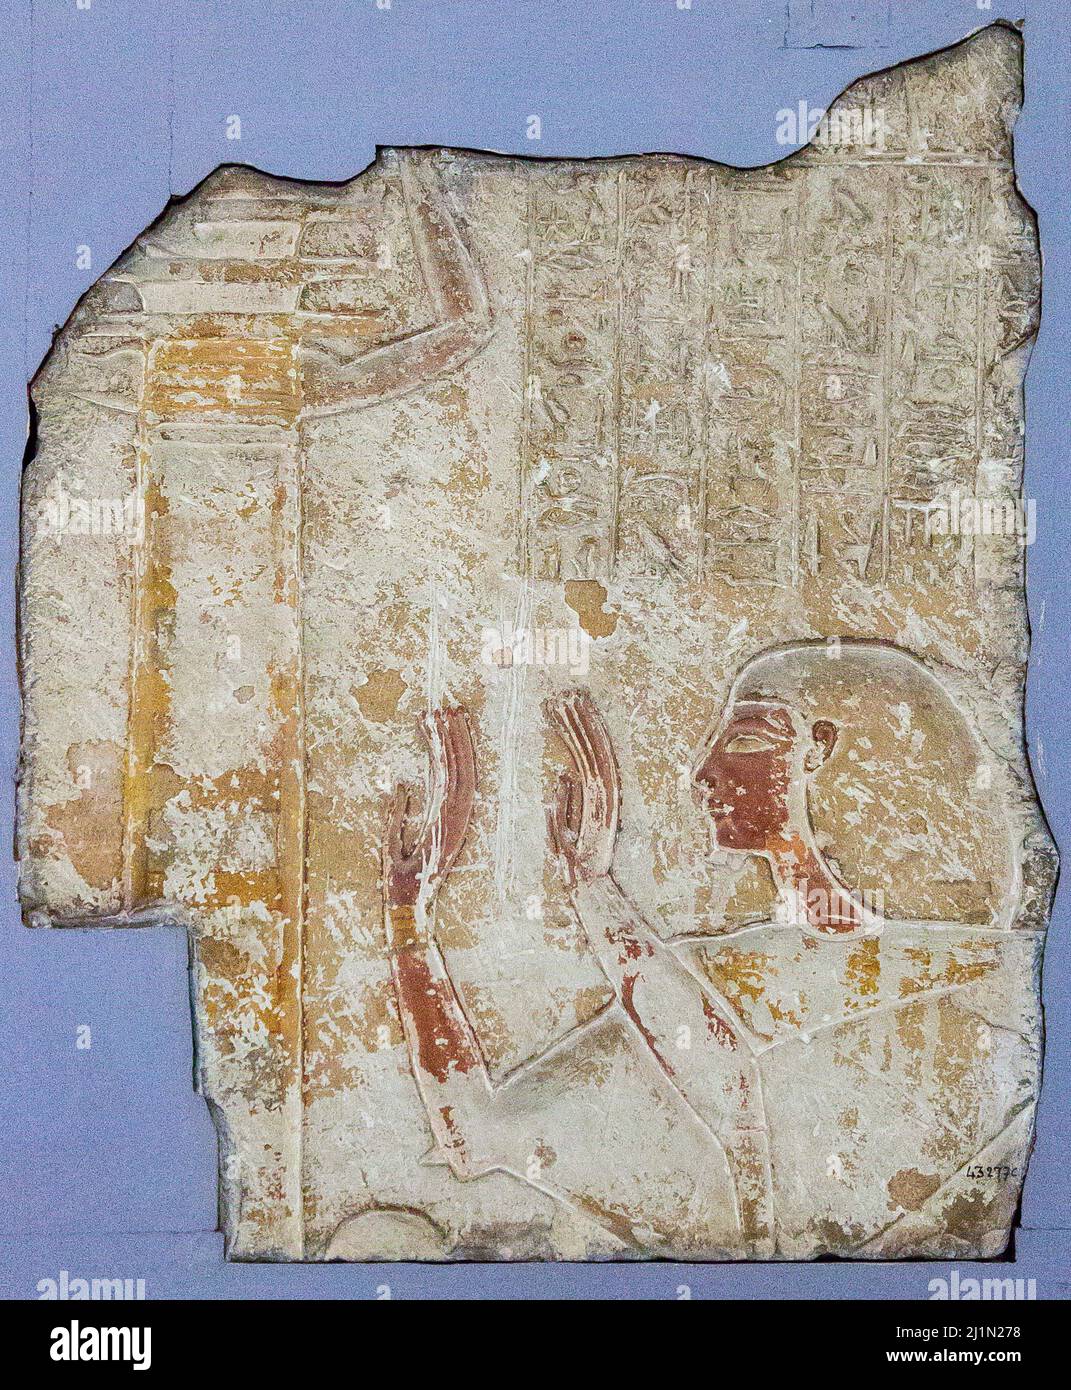 El Cairo, Museo Egipcio, relevo del mayordomo Horemheb, Nuevo Reino, de Saqqara : Adoración del pilar Djed, e himno al sol. Foto de stock